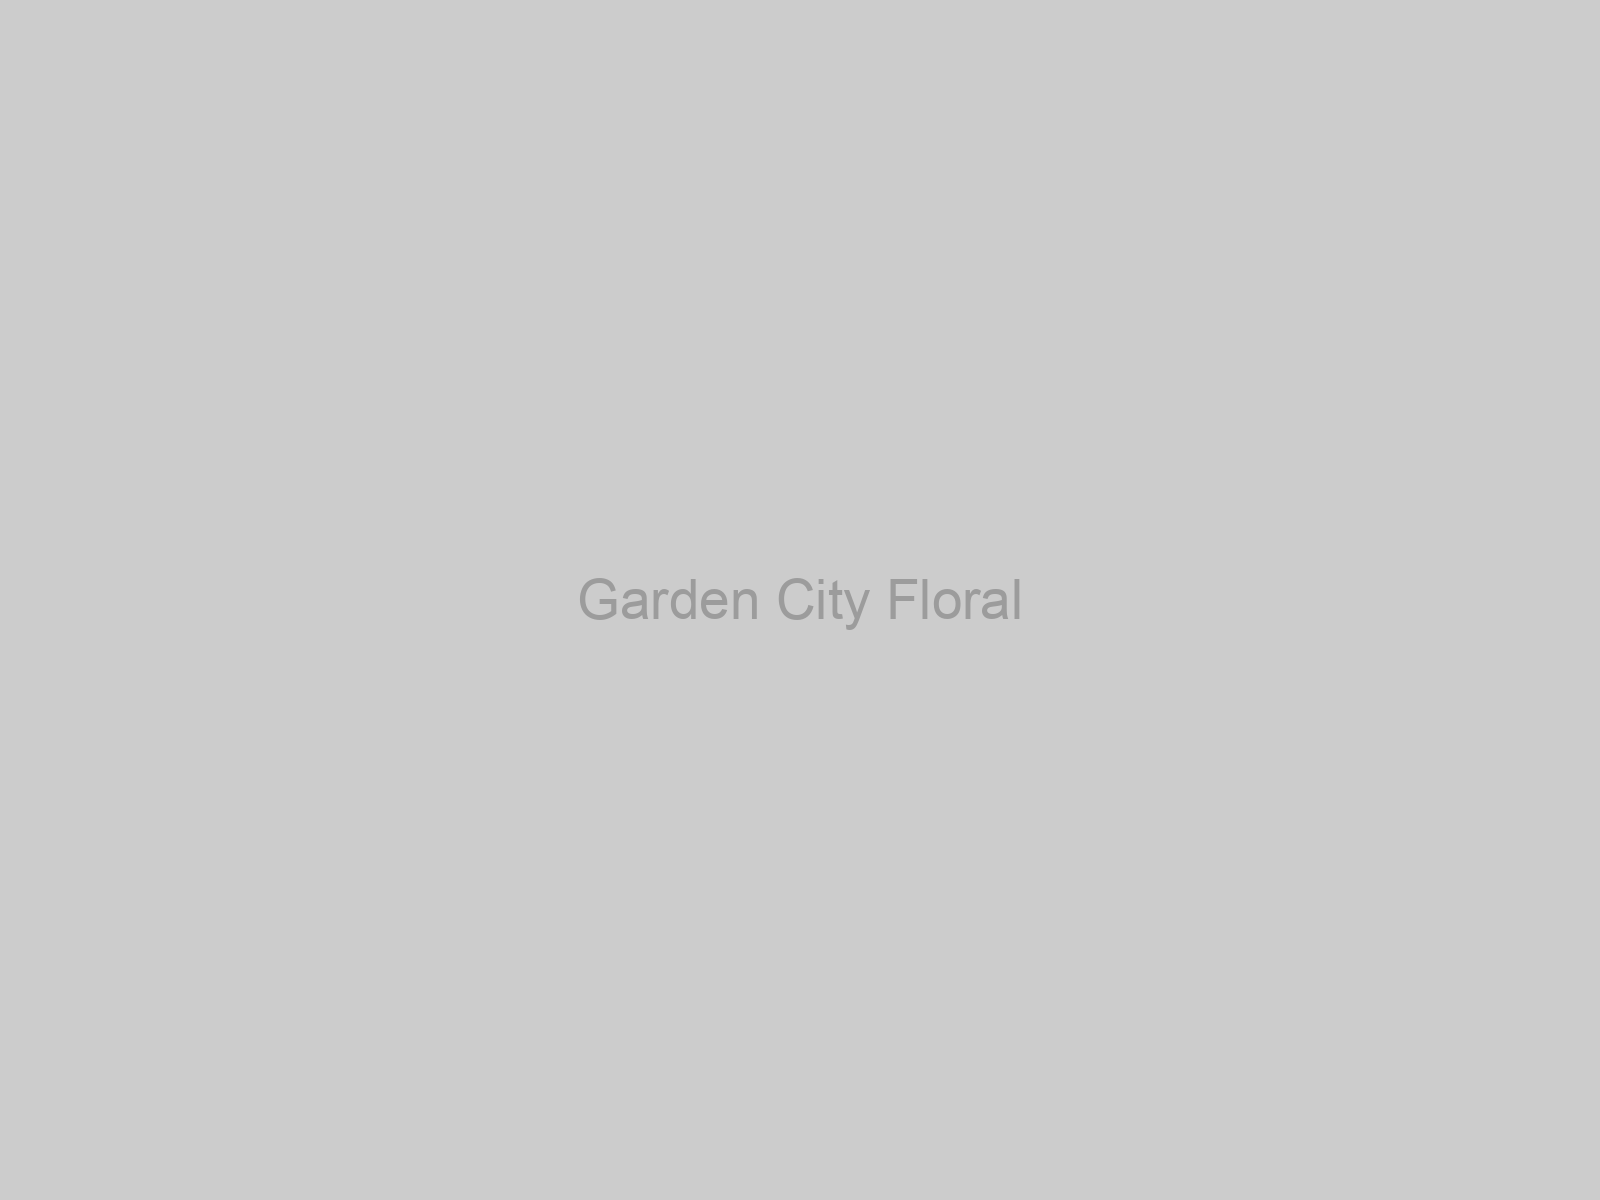 Garden City Floral